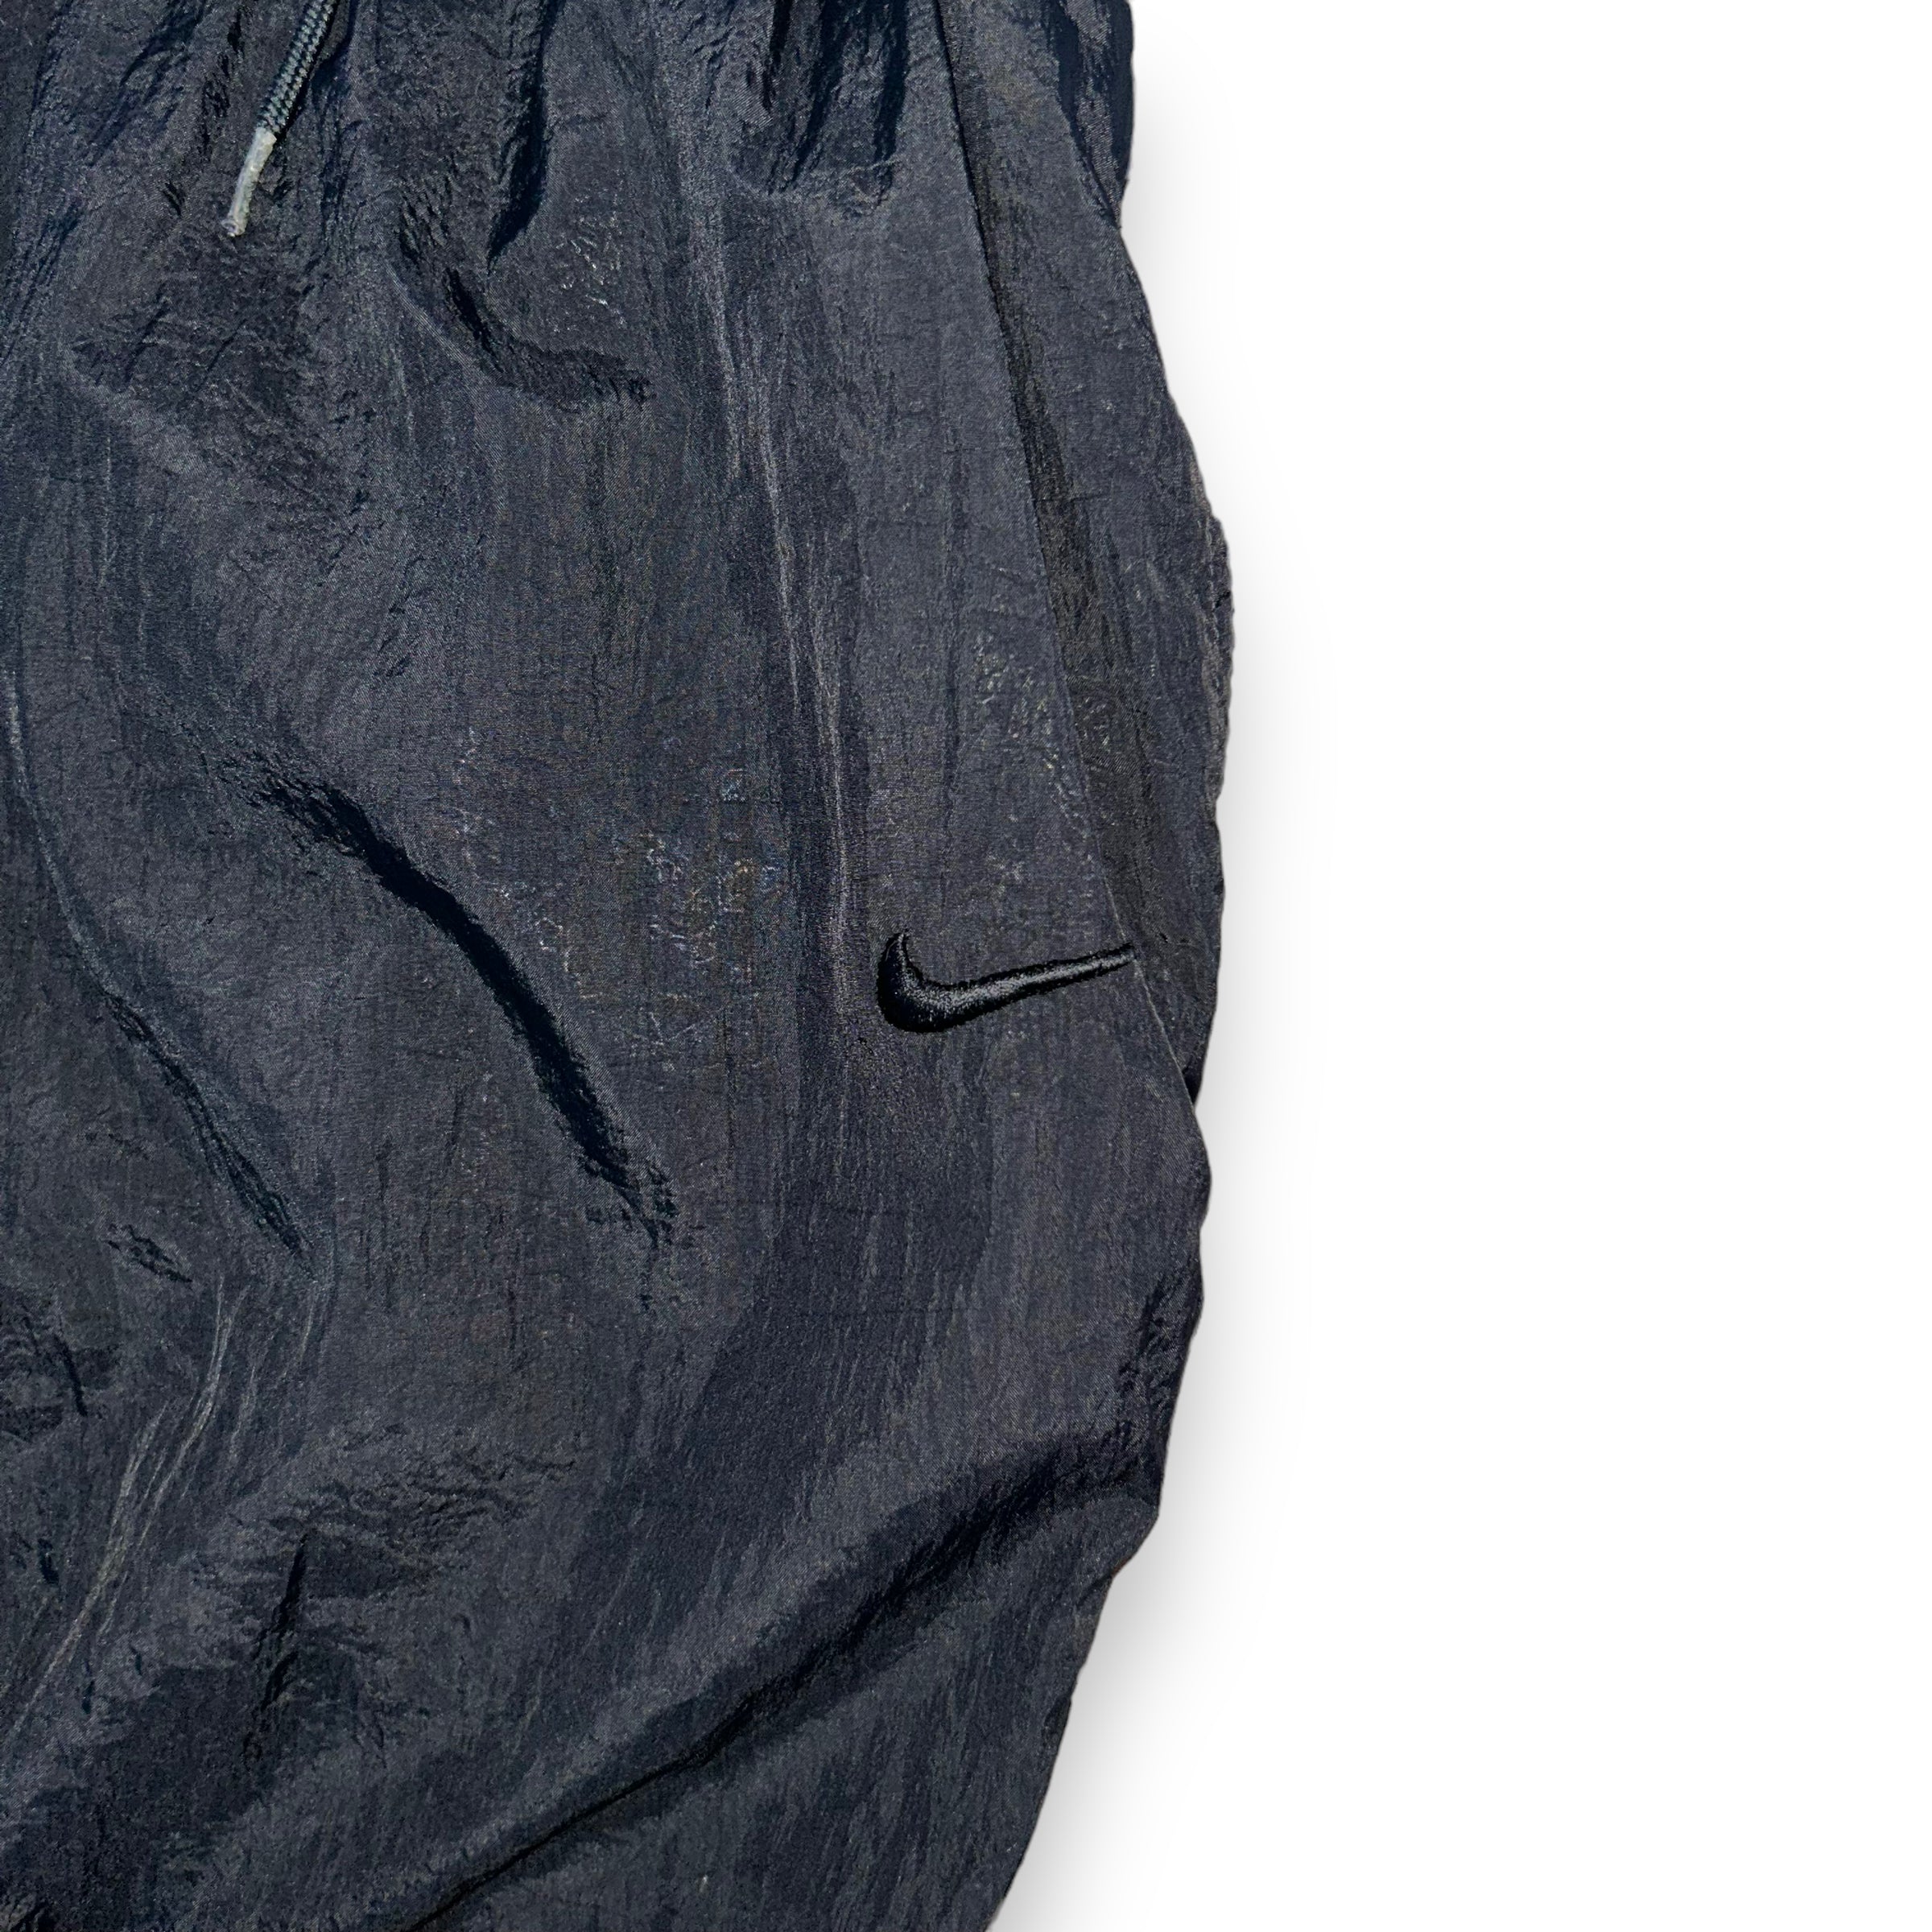 Pantaloni Nike Vintage (L)